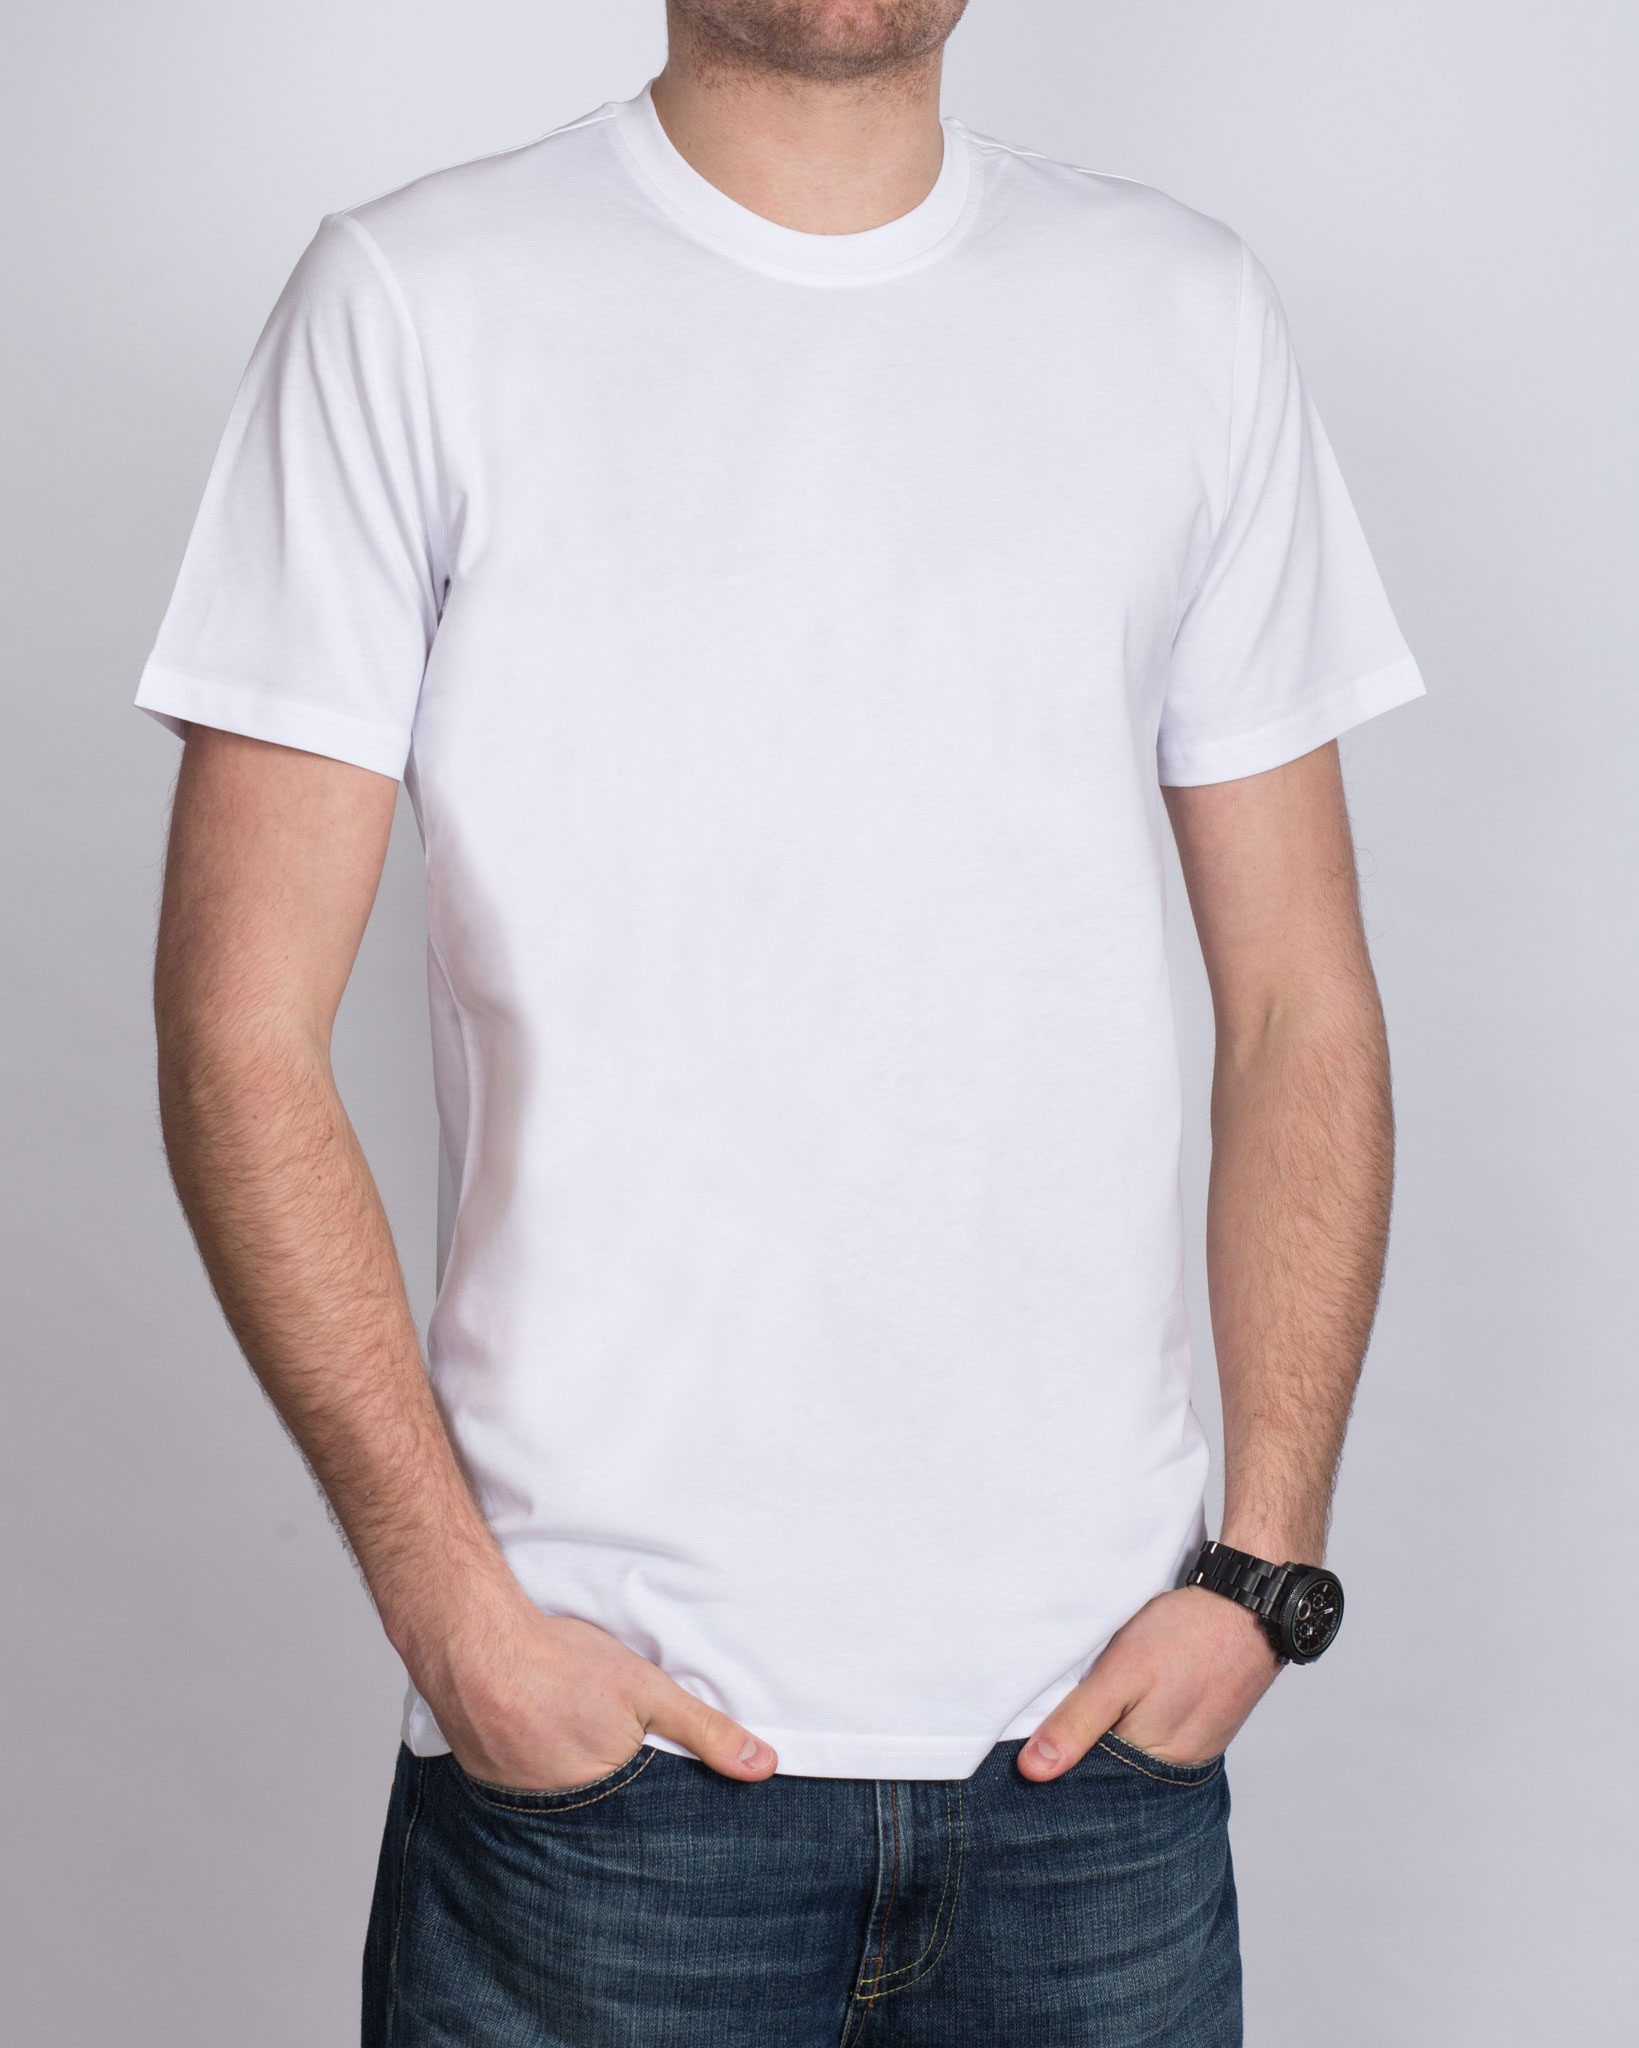 Girav Extra Tall T-Shirt (white) Twin Pack